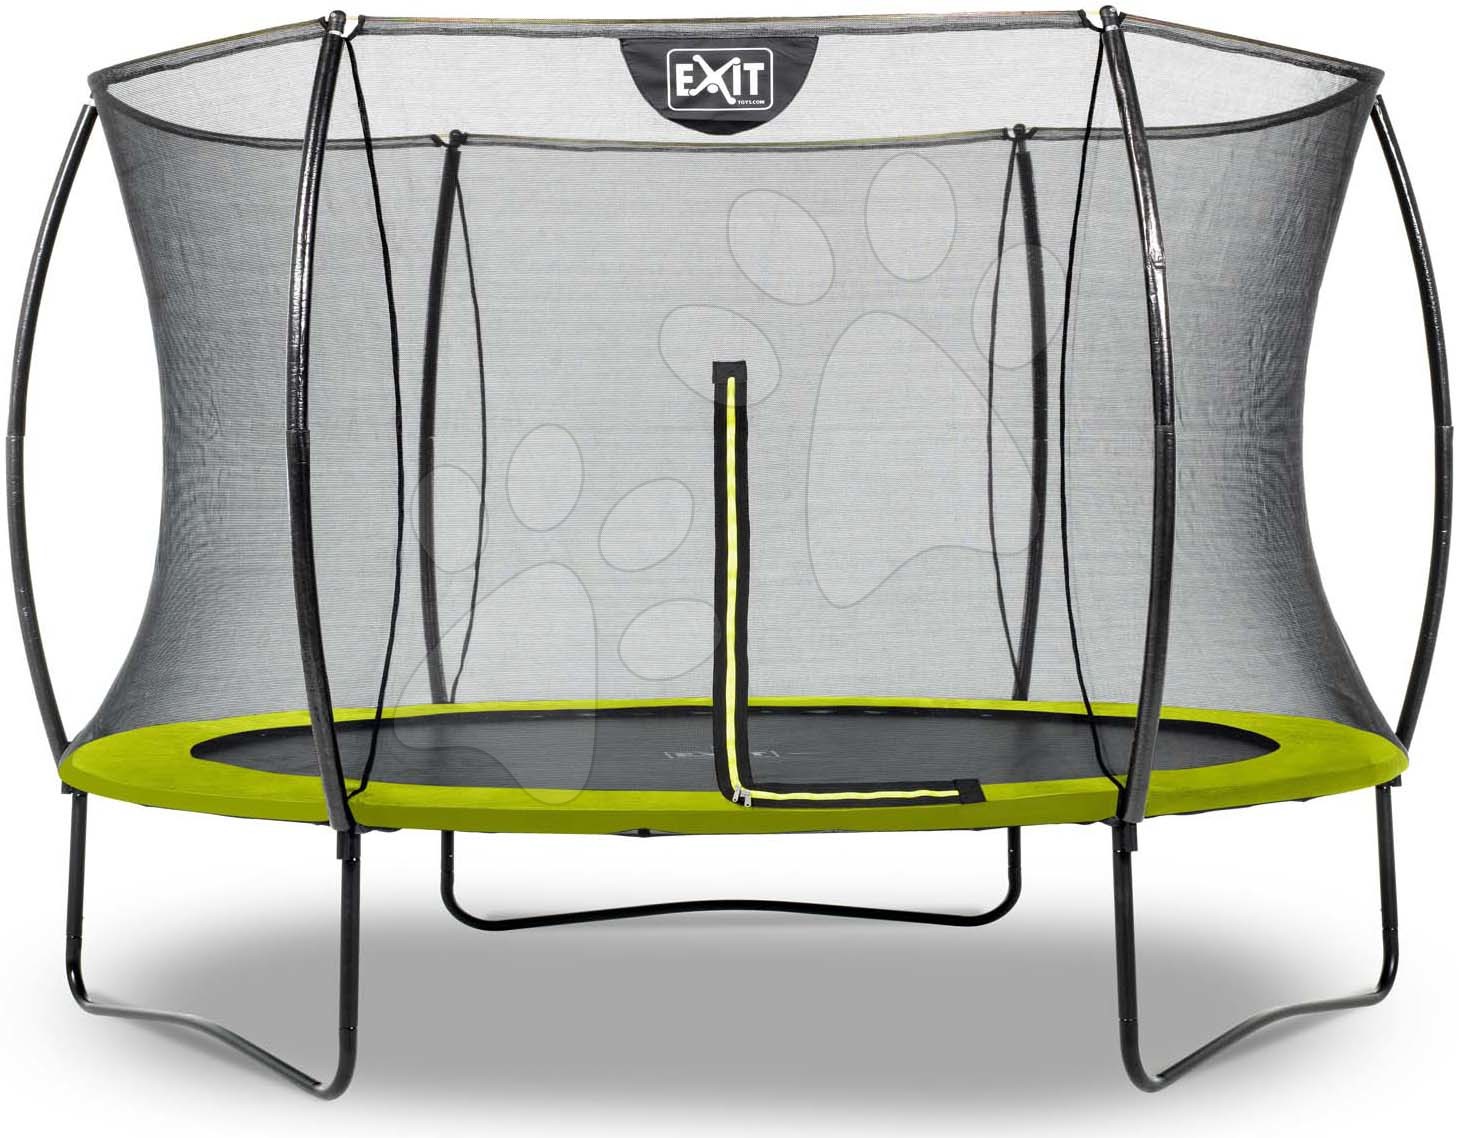 Trampolíny s ochrannou sieťou - Trampolína s ochrannou sieťou Silhouette trampoline Exit Toys okrúhla priemer 305 cm zelená